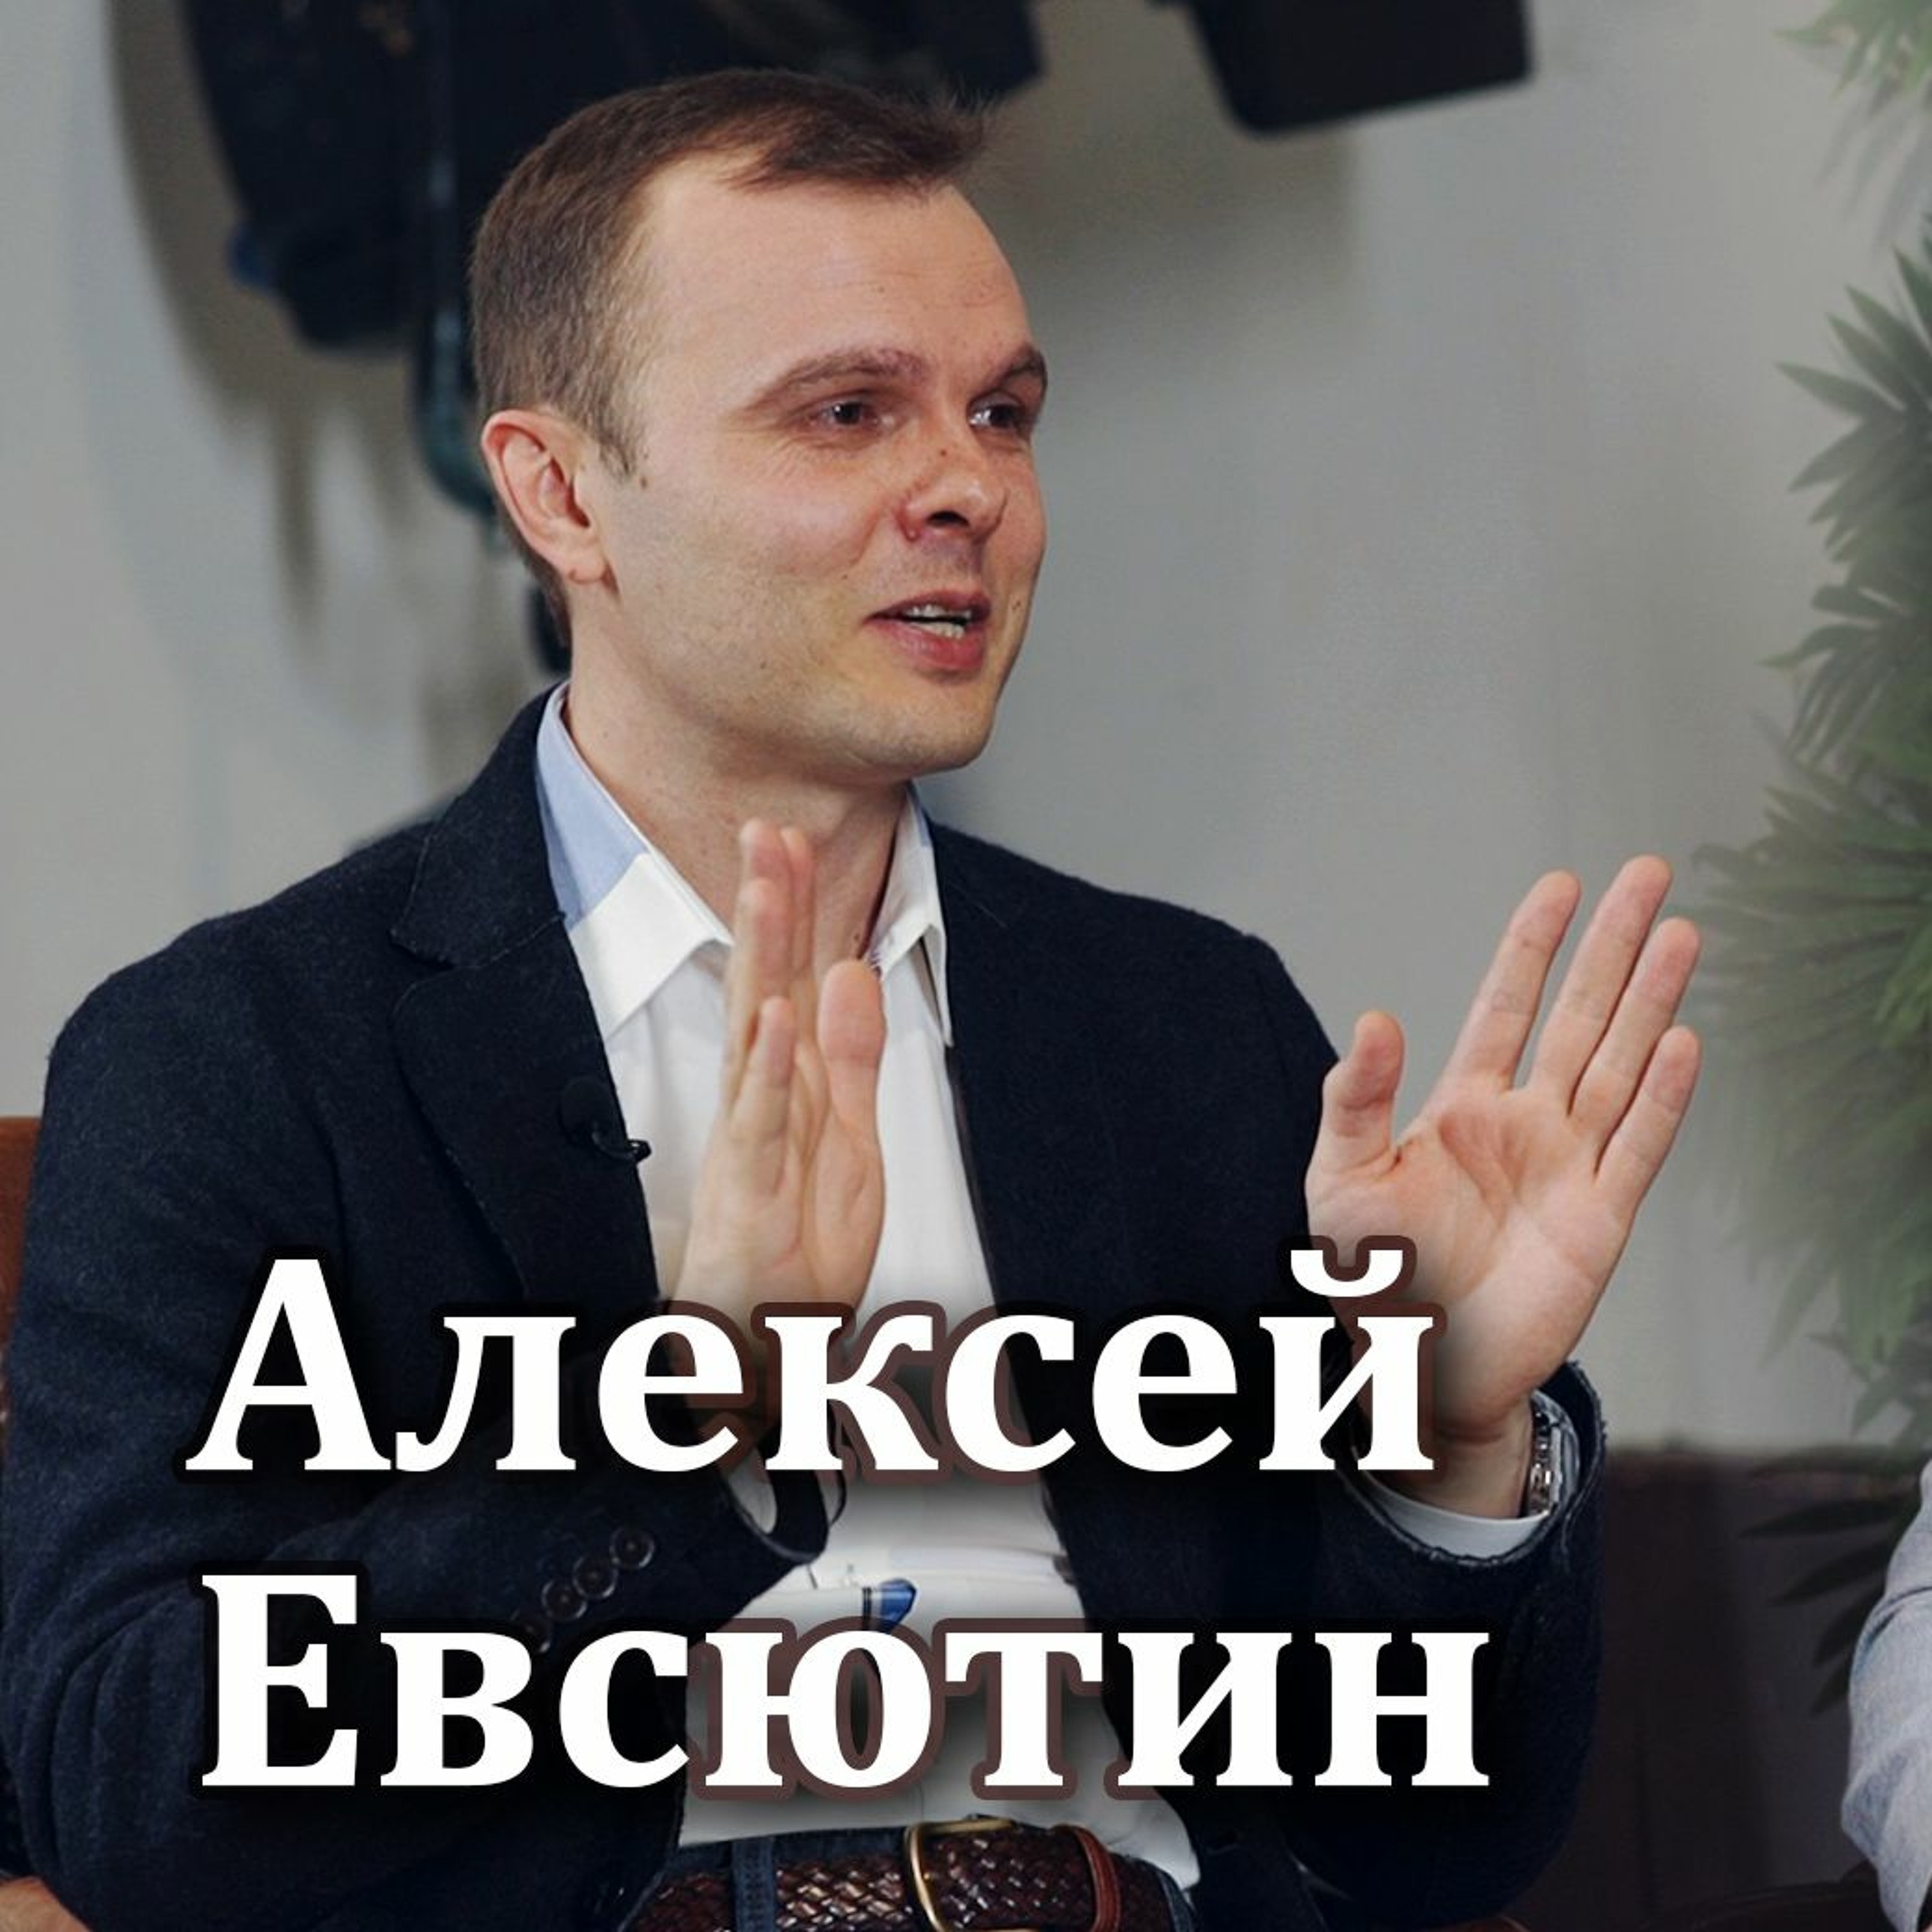 #03 - Алексей Евсютин: Консультант по управлению капиталом